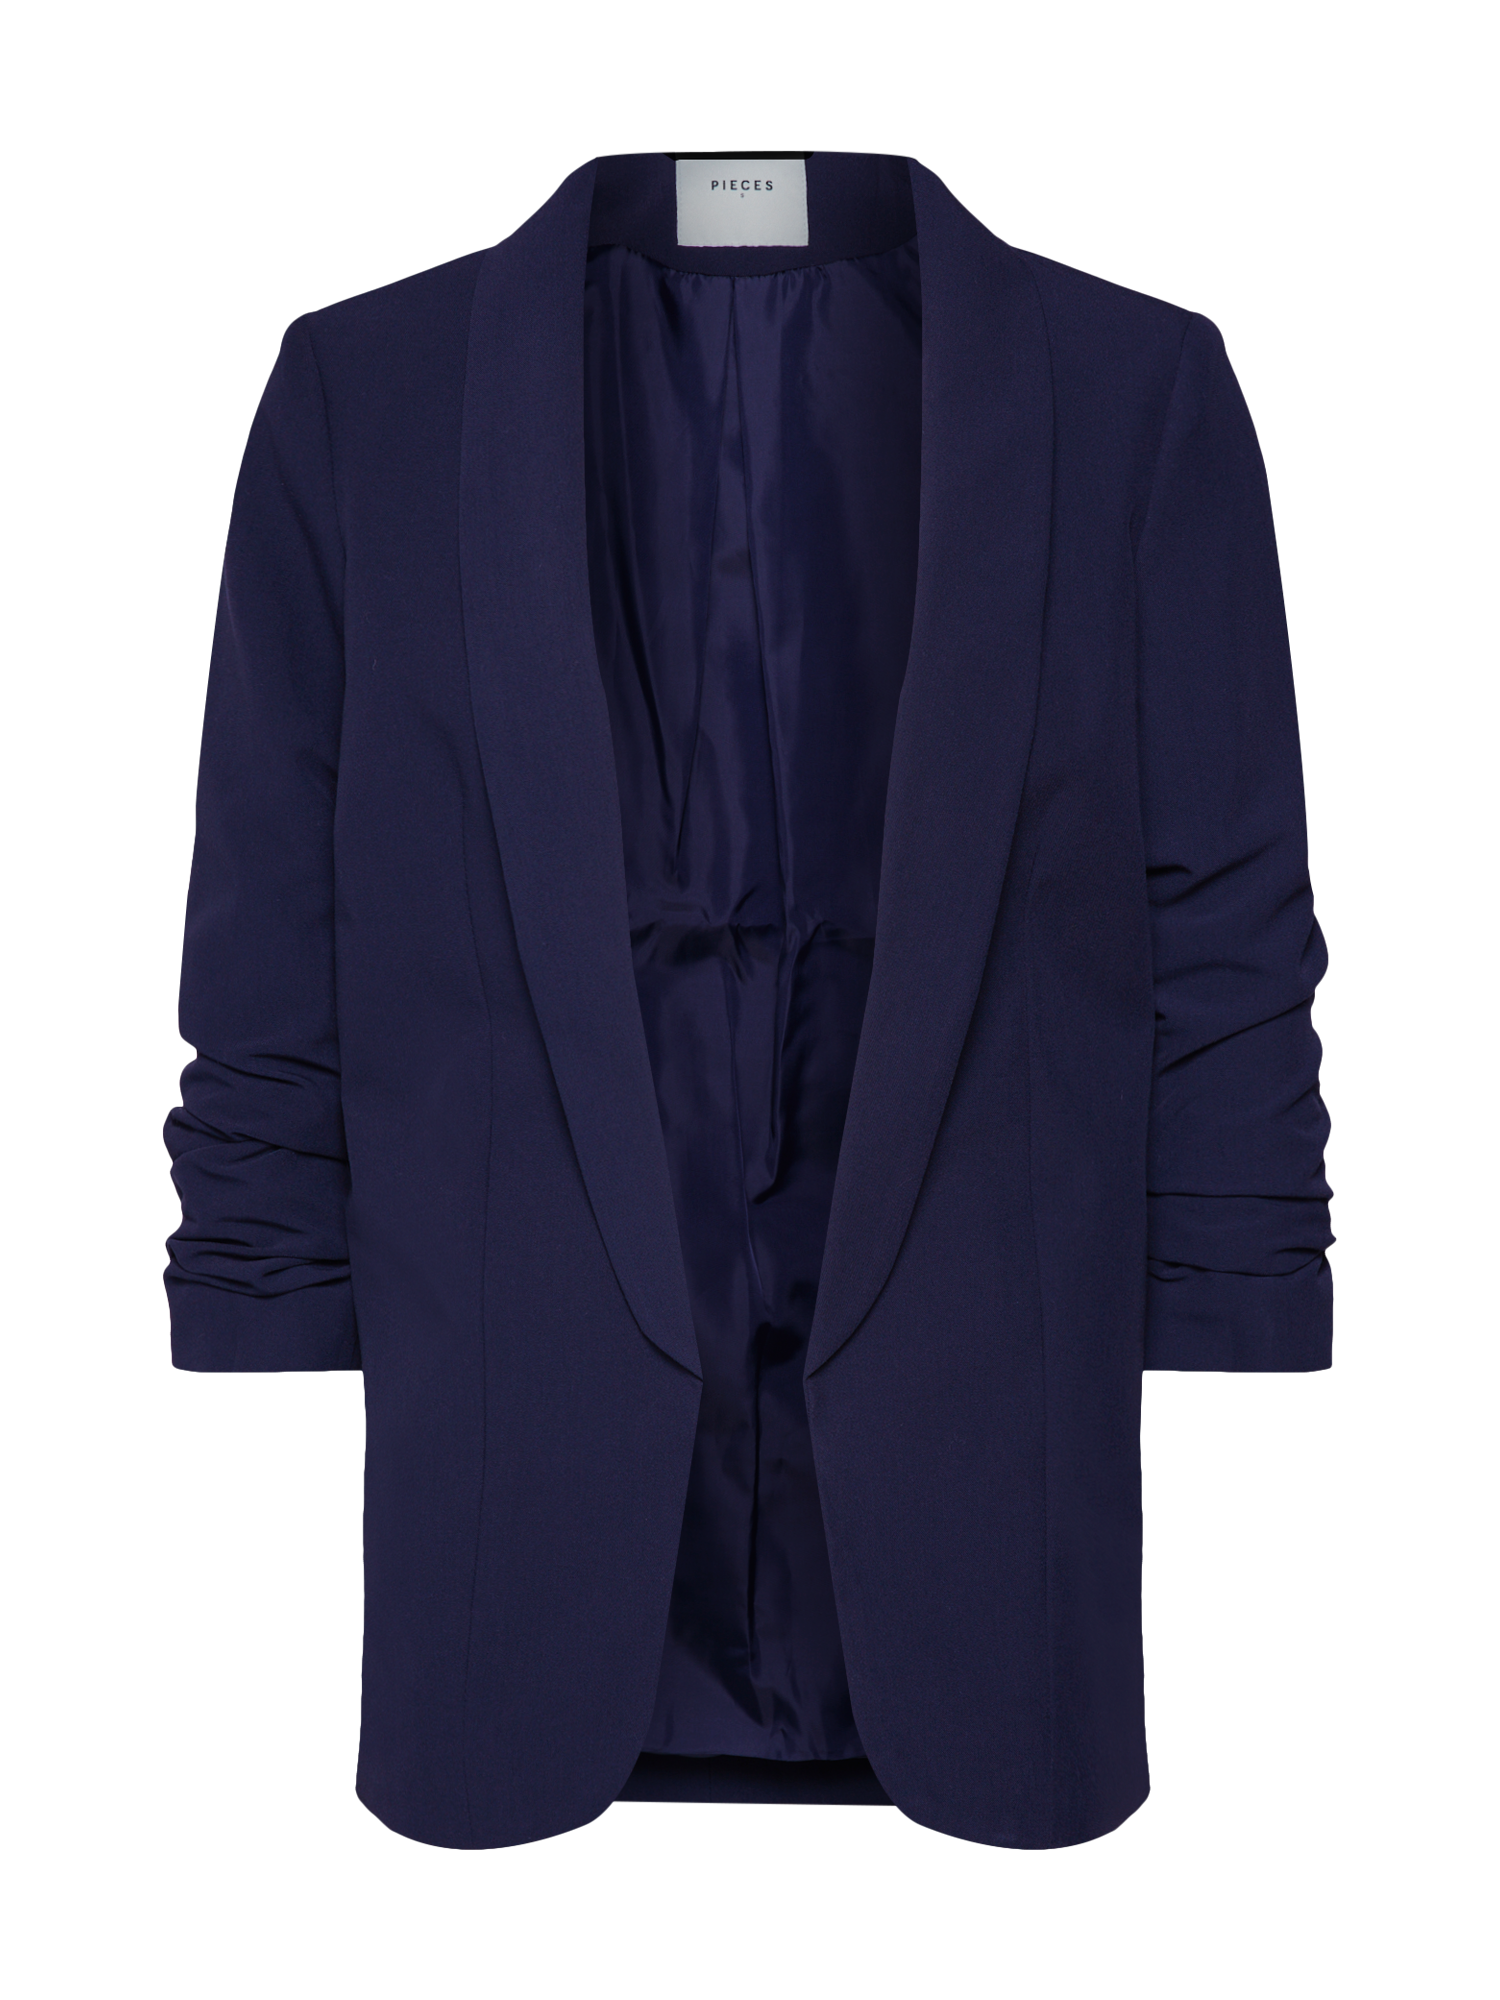 Odzież Kobiety PIECES Marynkarka BOSS w kolorze Niebieska Nocm 